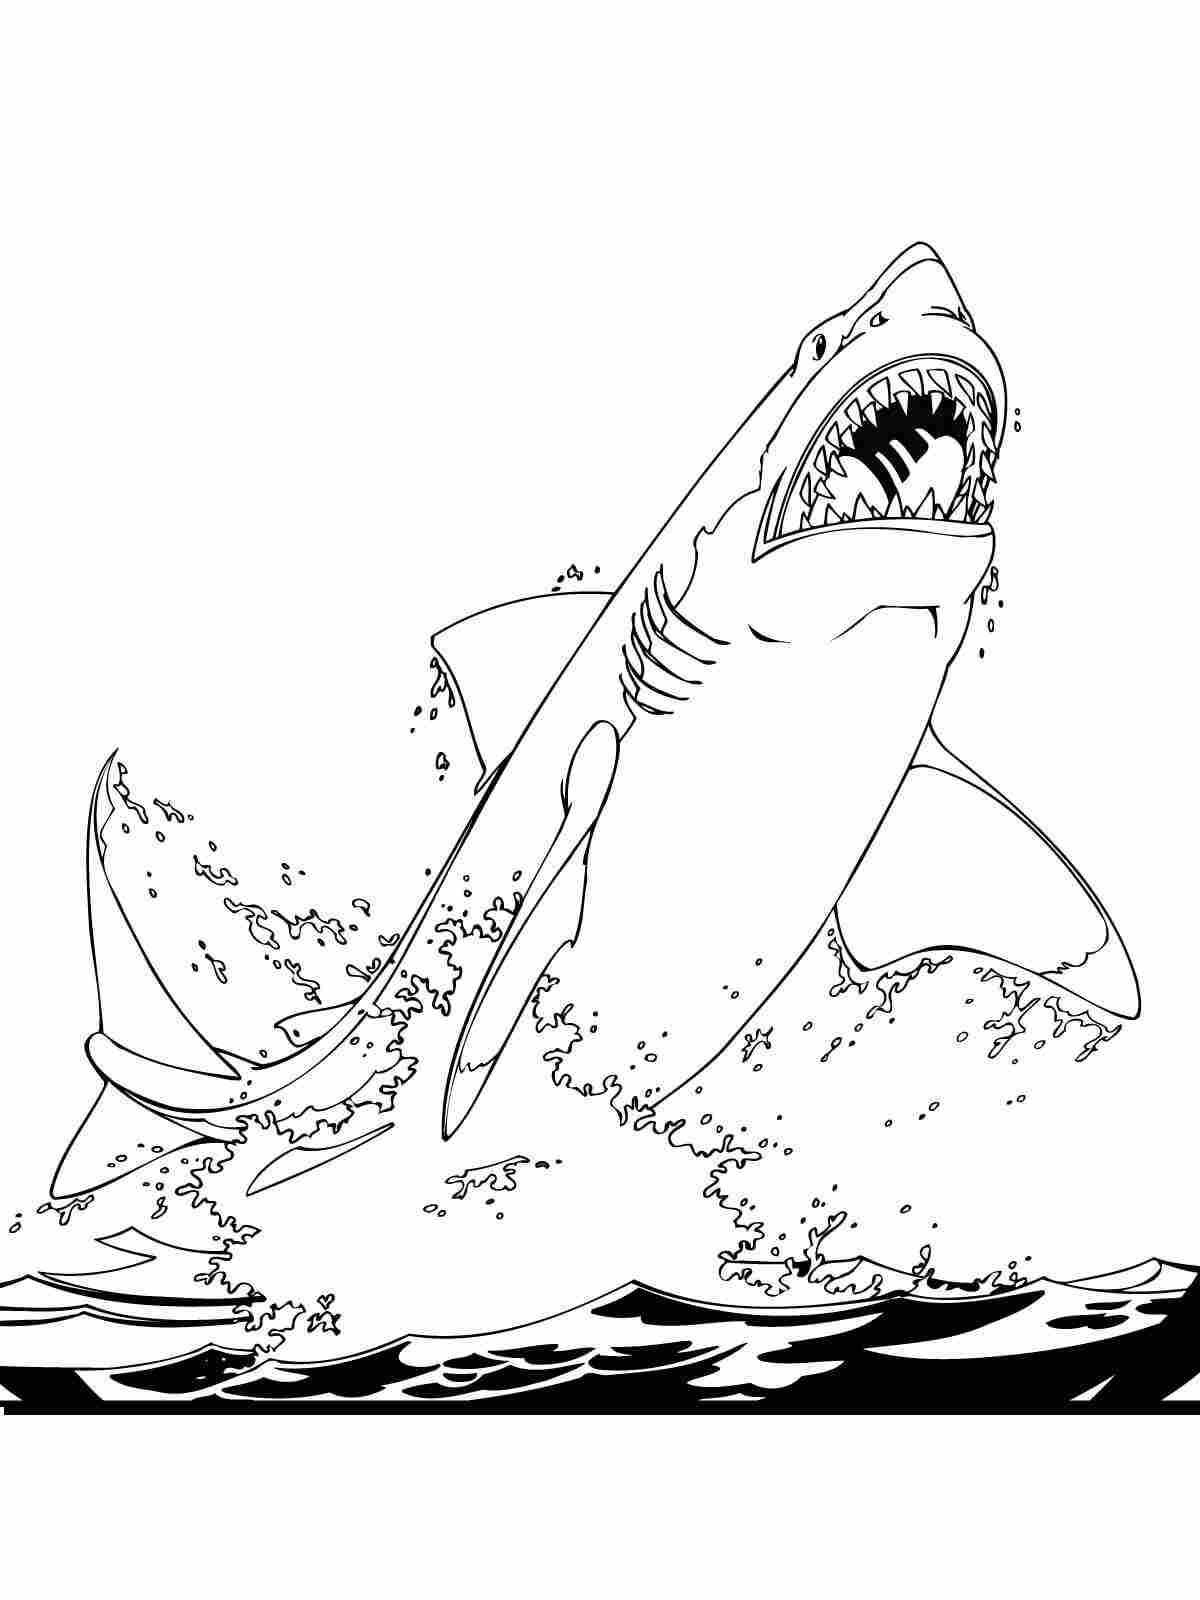 Der große weiße Hai springt aus dem Wasser zum Ausmalen